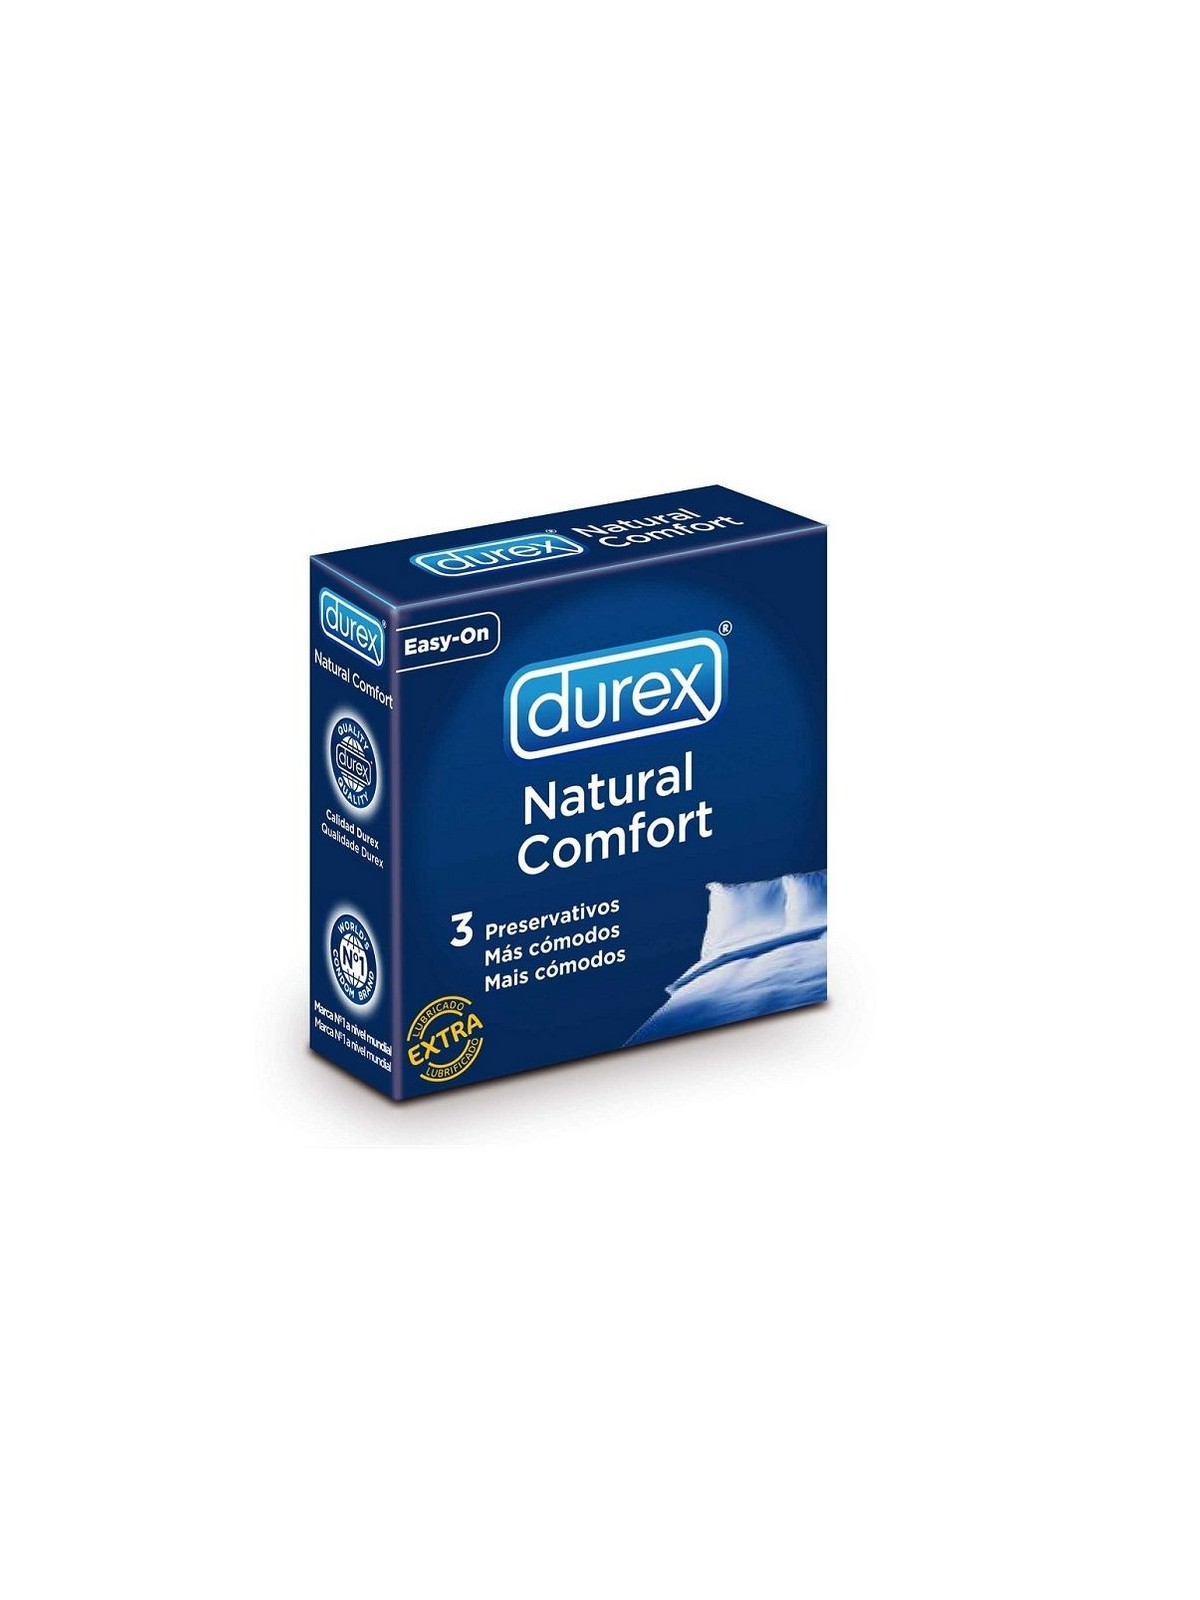 Durex Natural Comfort 3 uds - Comprar Condones naturales Durex - Preservativos naturales (1)